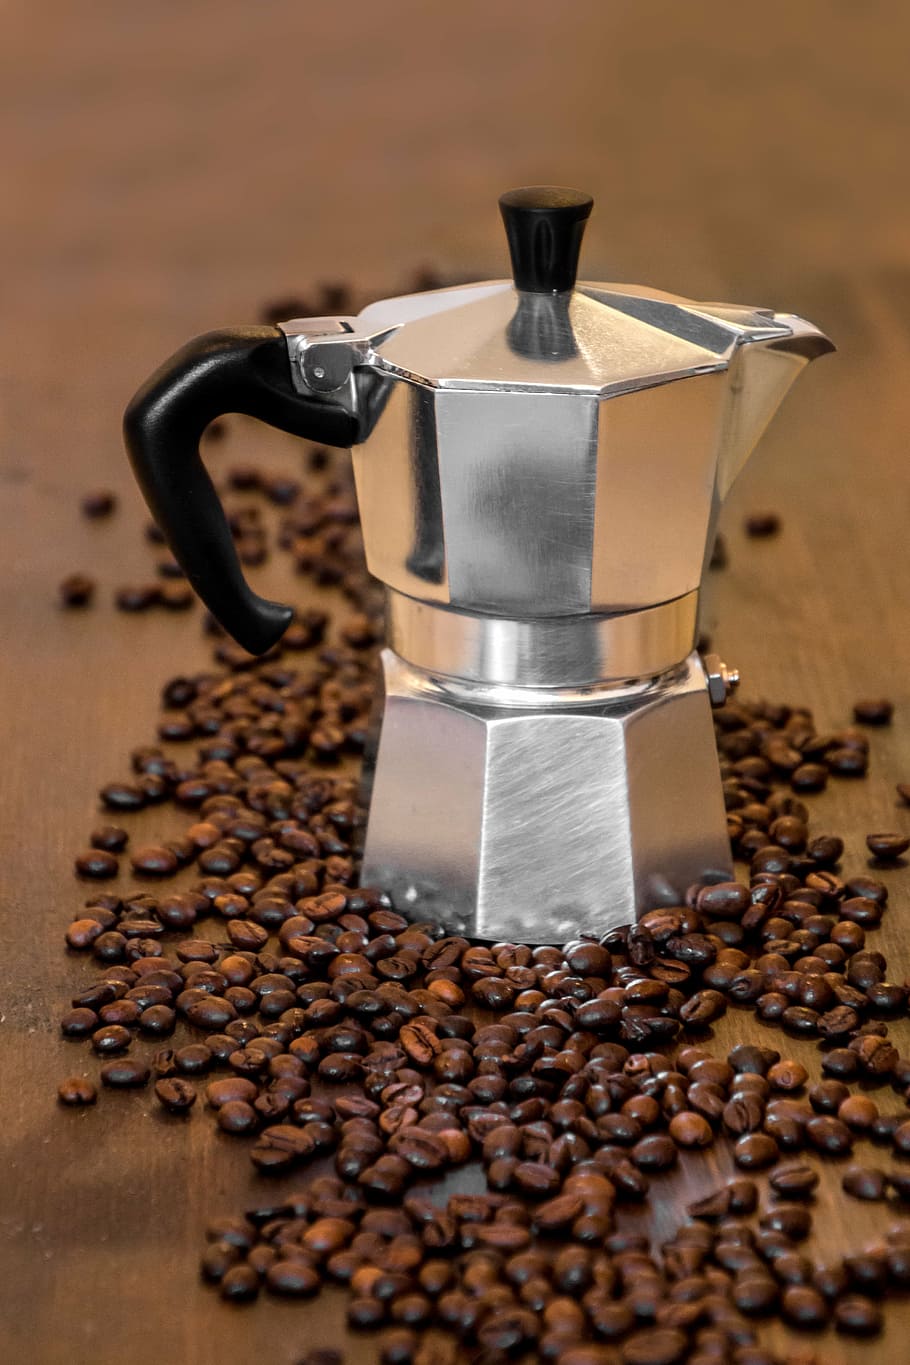 closeup, pote moka, grãos de café, marrom, de madeira, superfície, café, chá, cafeteira velha, velha máquina de café italiana